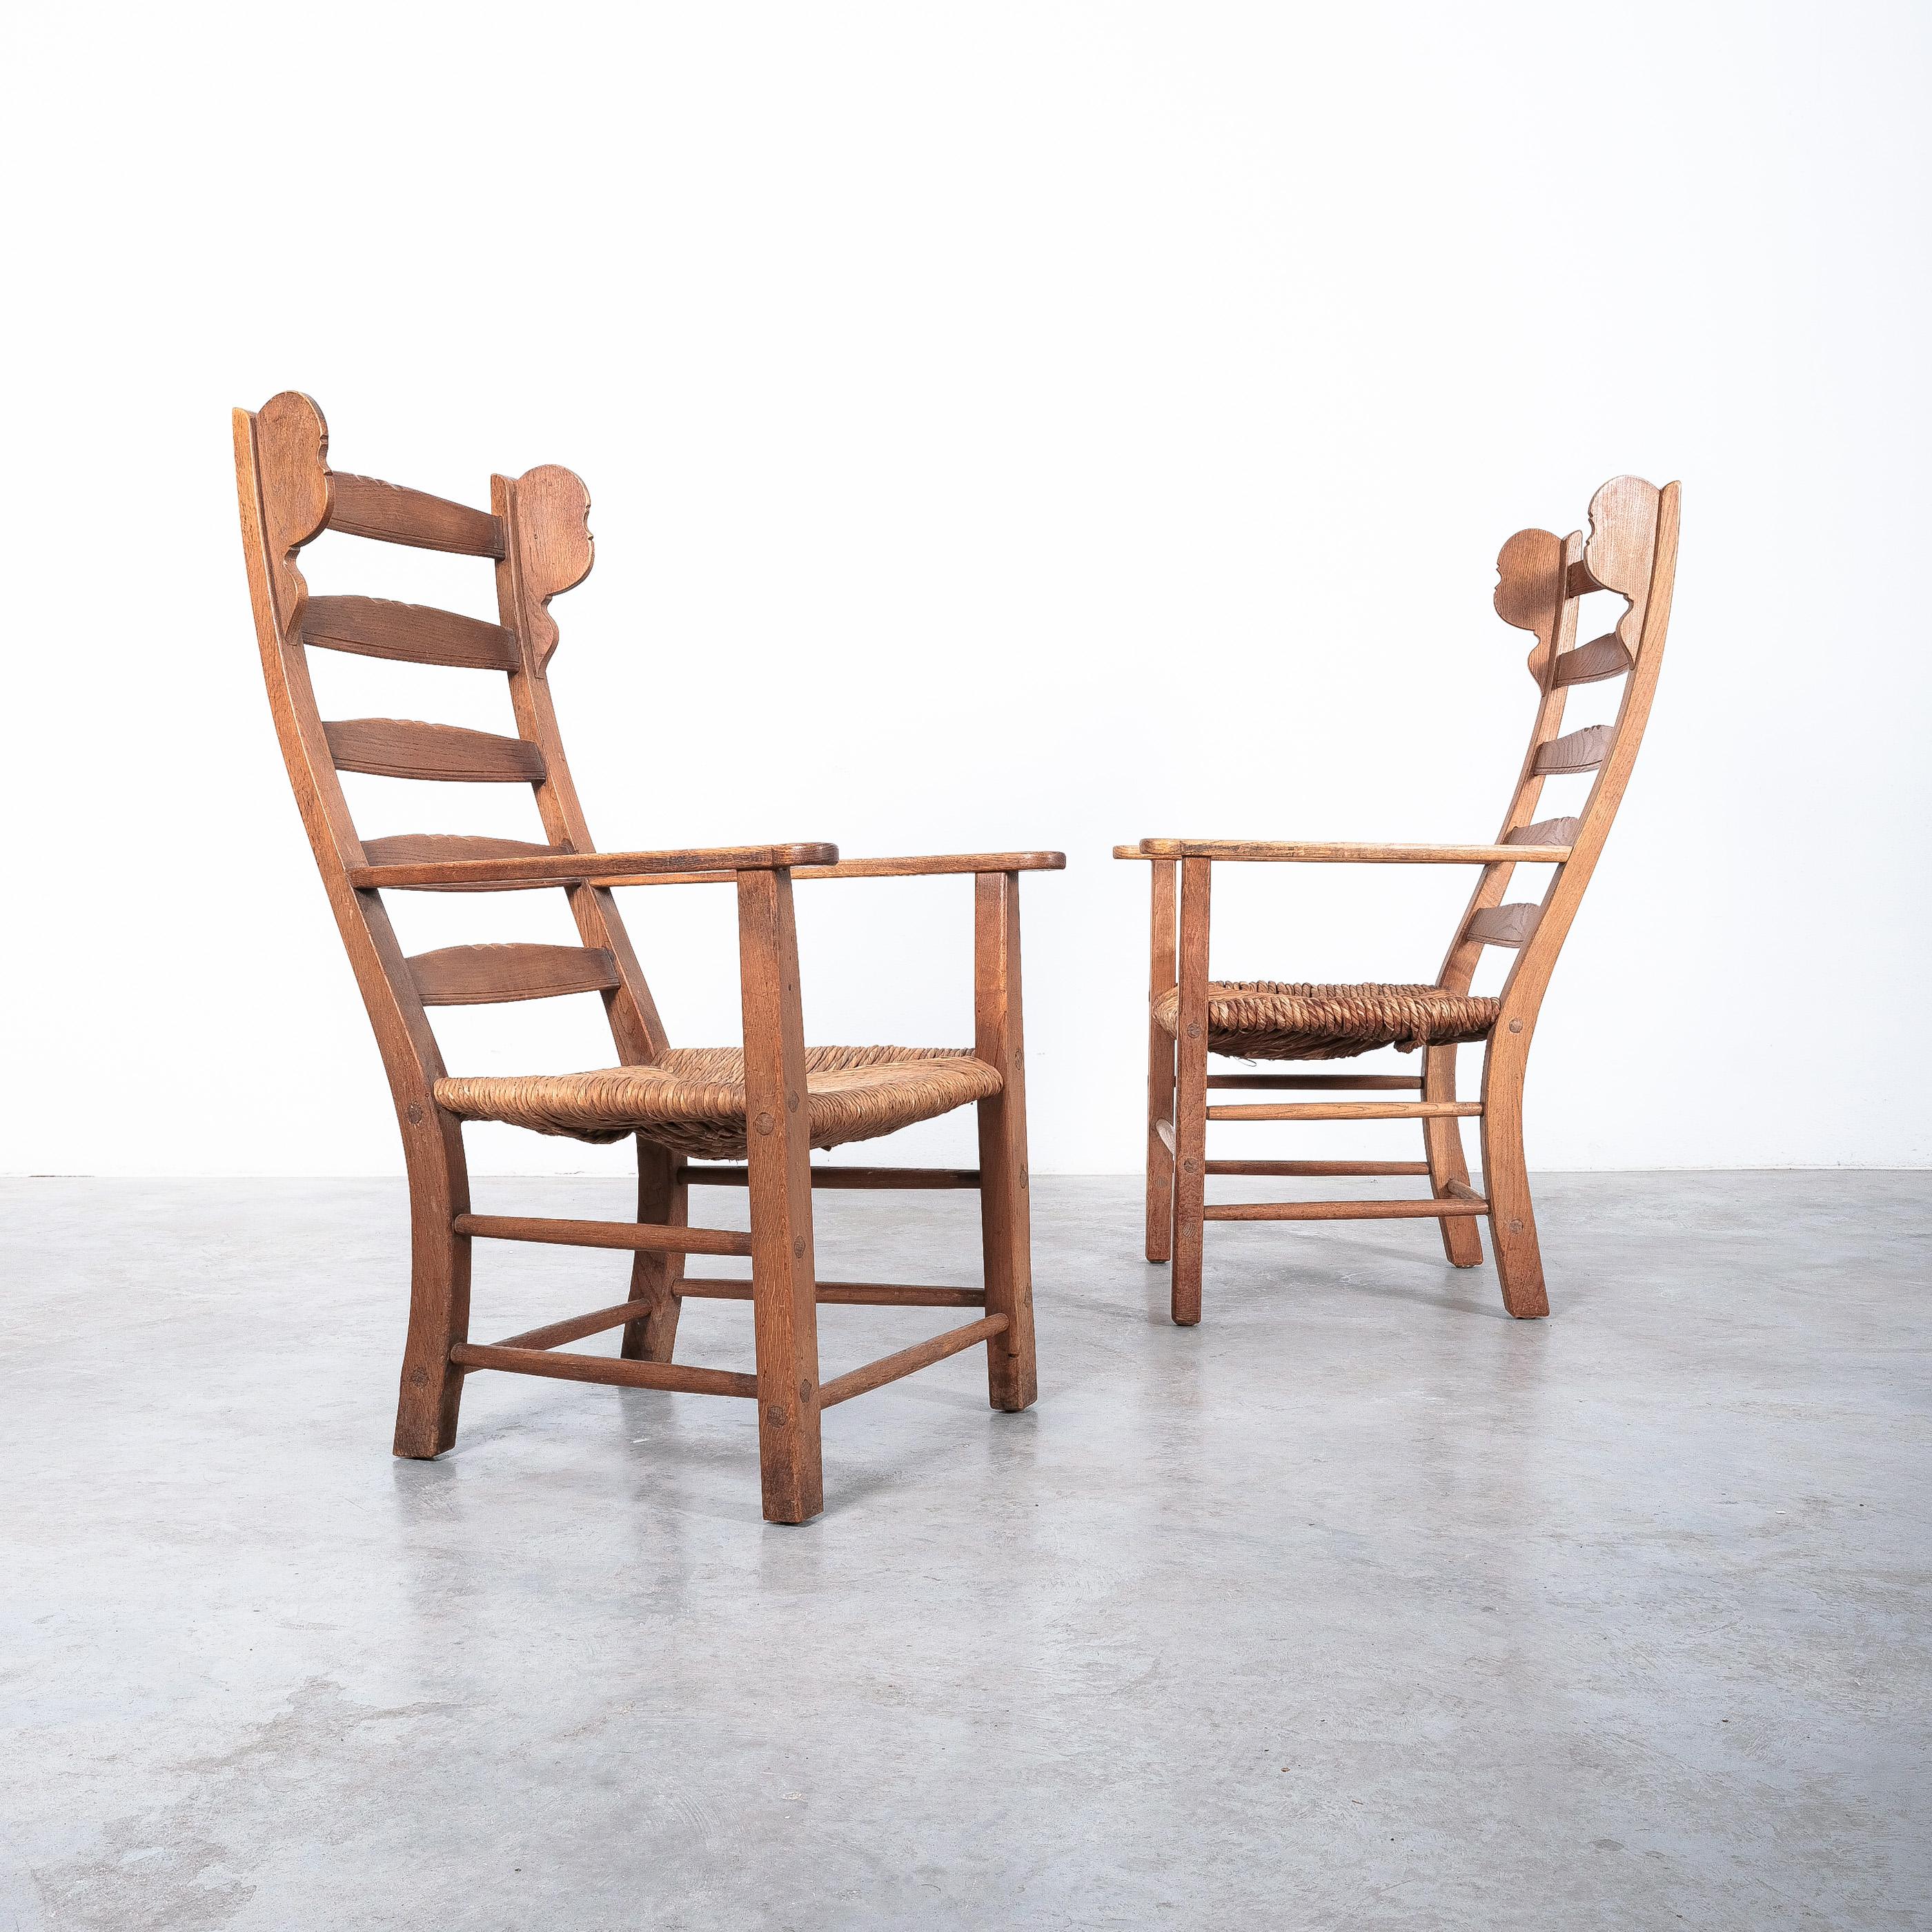 Paar Sessel, Buche, Seilhanf, Frankreich, 1950er Jahre.

Wunderschöner Satz von 2 fast identischen Sesseln, Mitte des Jahrhunderts. Einer der Stühle ist etwas höher und auch die Sitzhöhe weicht etwa einen halben Zoll ab. Die Sitze sind aus